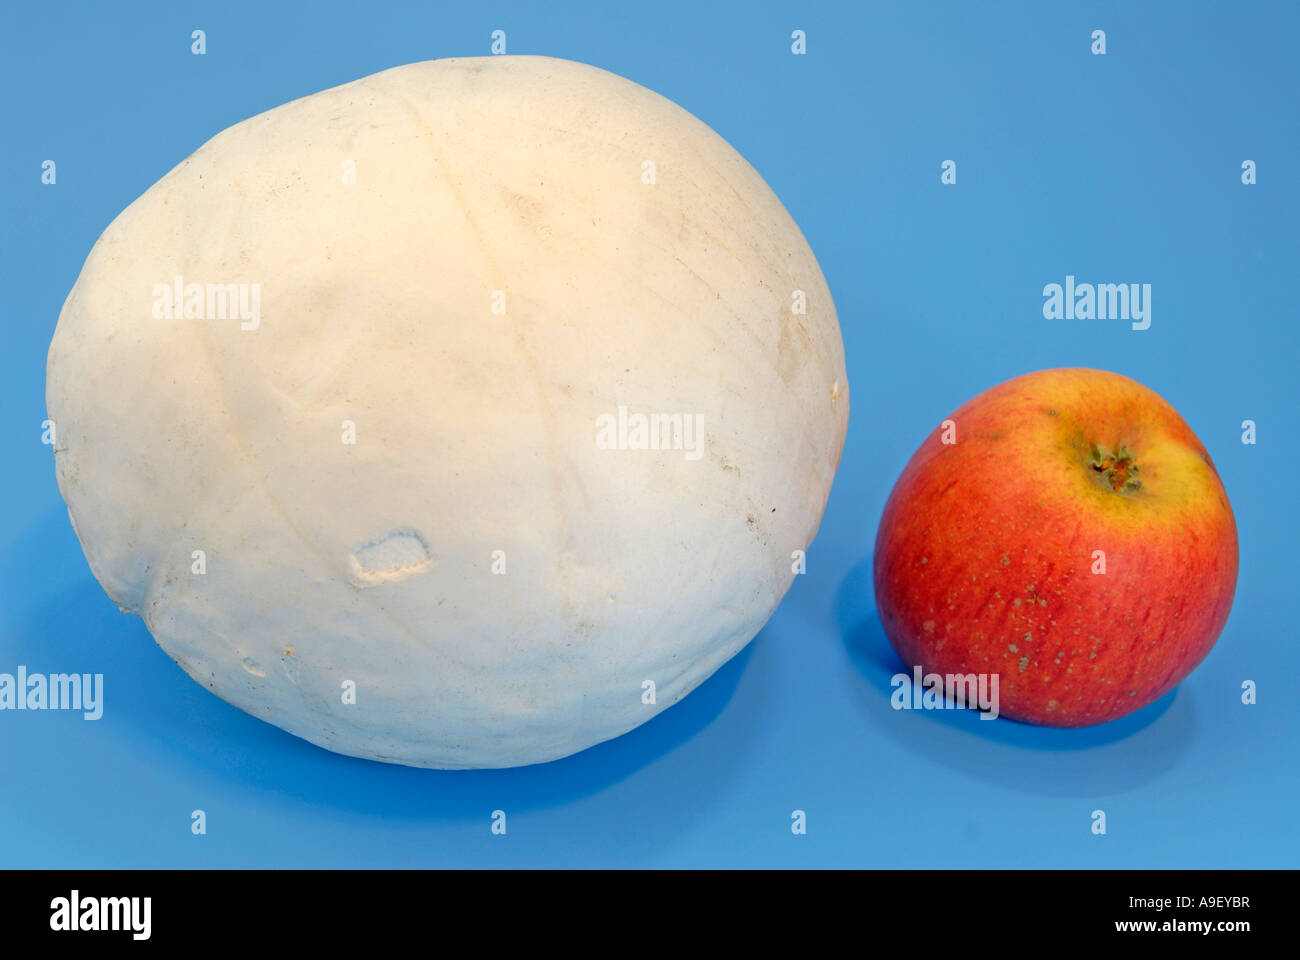 Giant Puffball (Langermannia Gigantea, Calvatia Gigantea) mit heimischen Apfel zum Vergleich der Größe Studio Bild Stockfoto